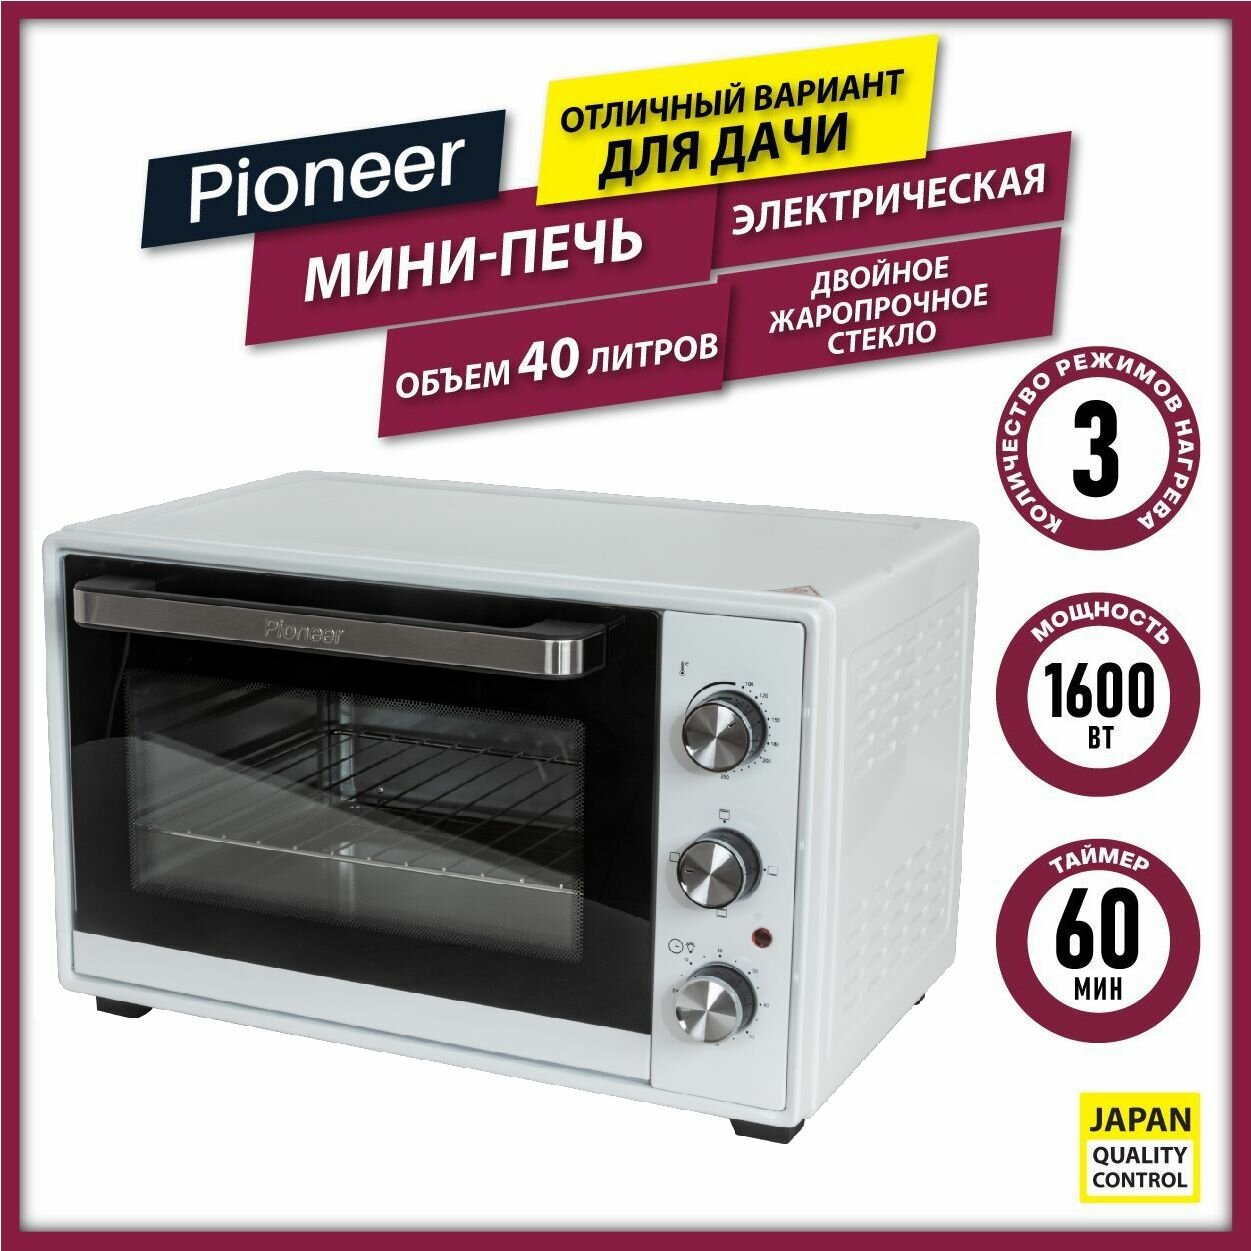 Мини печь электрическая Pioneer MO5008 white / духовка 40 литров / до 250 градусов / двойное стекло / 1600 Вт